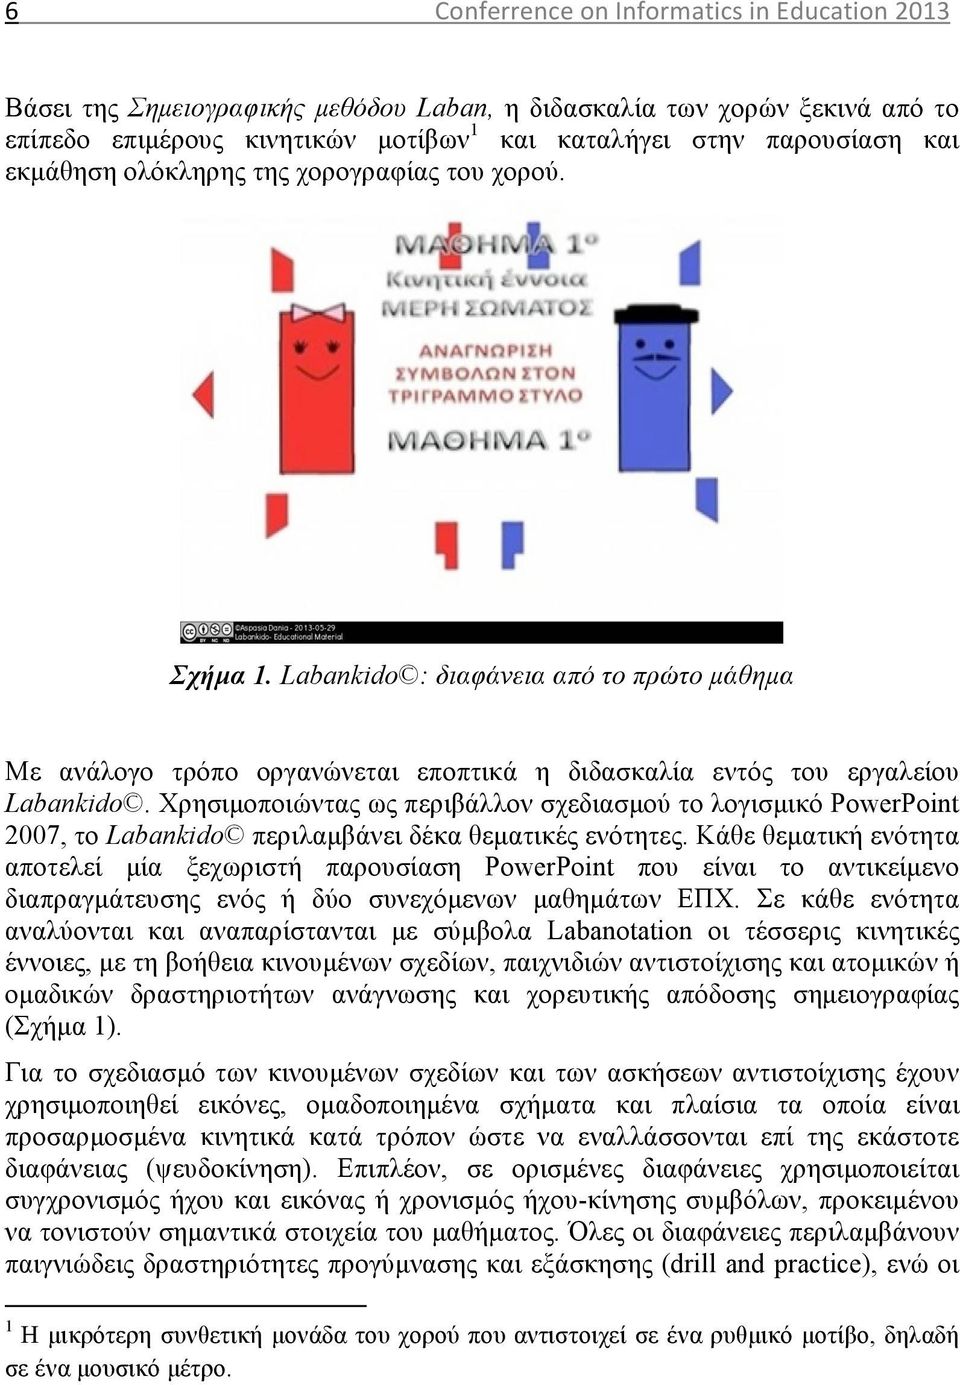 Χρησιµοποιώντας ως περιβάλλον σχεδιασµού το λογισµικό PowerPoint 2007, το Labankido περιλαµβάνει δέκα θεµατικές ενότητες.